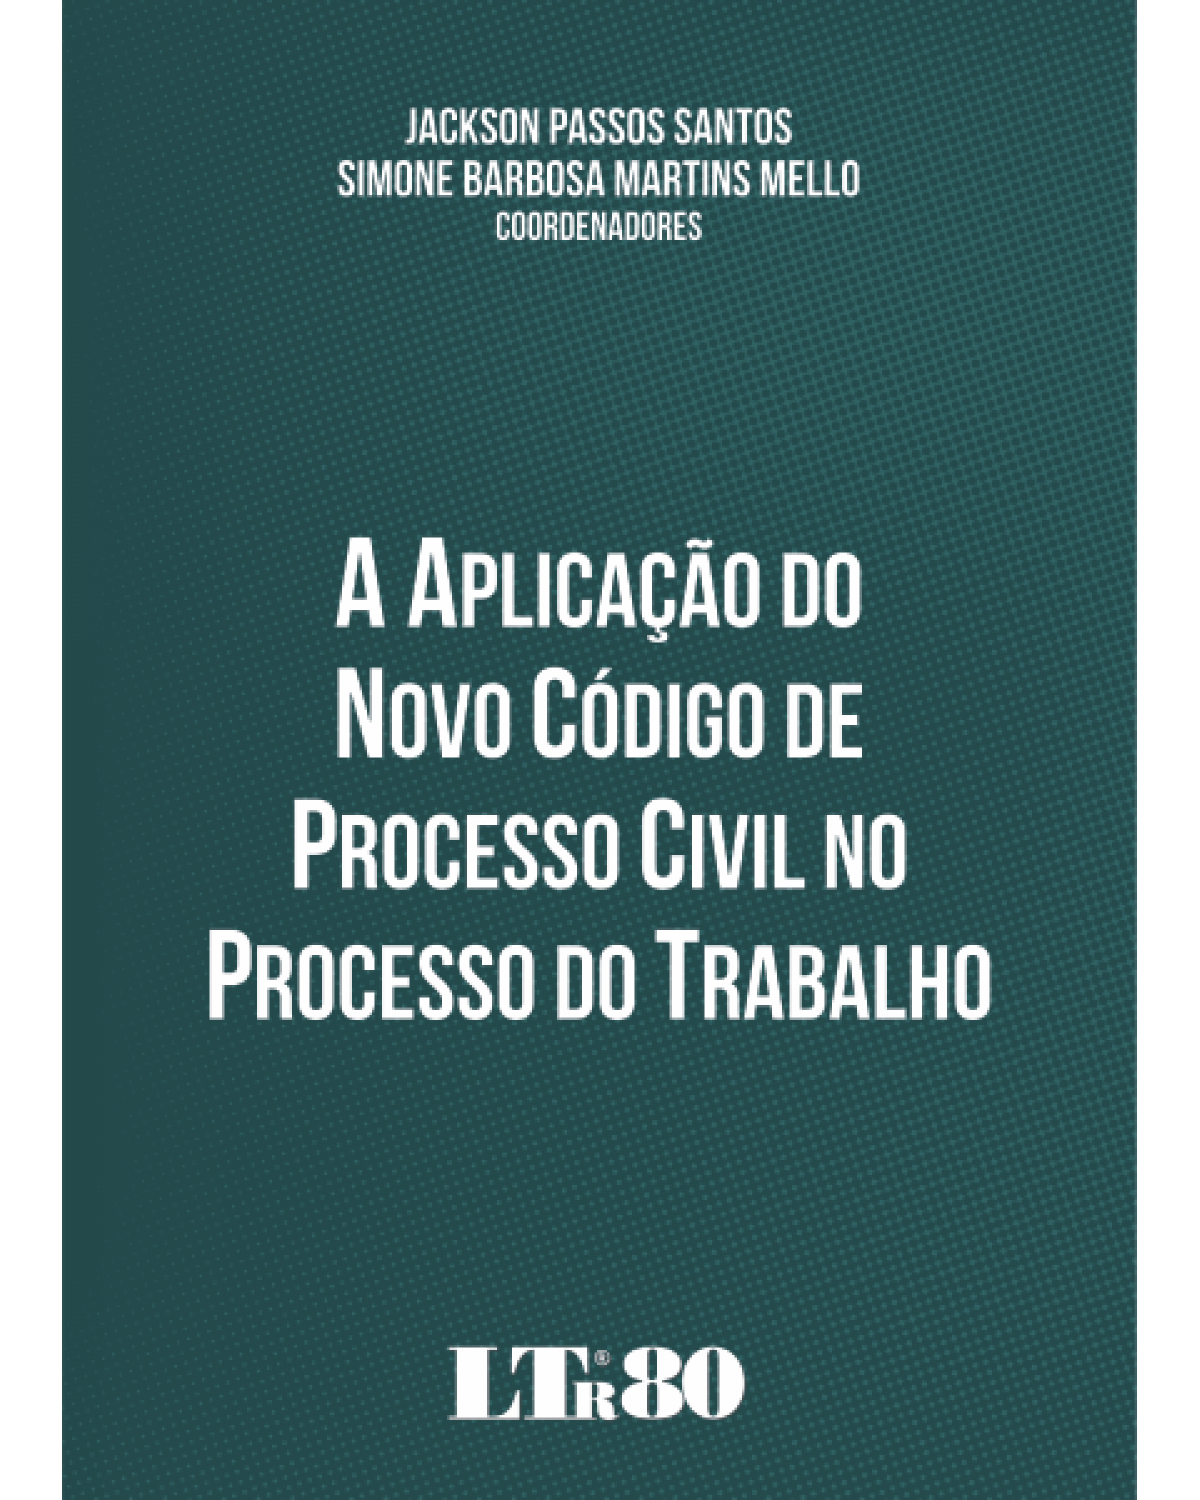 A aplicação do novo código de processo civil no processo do trabalho - 1ª Edição